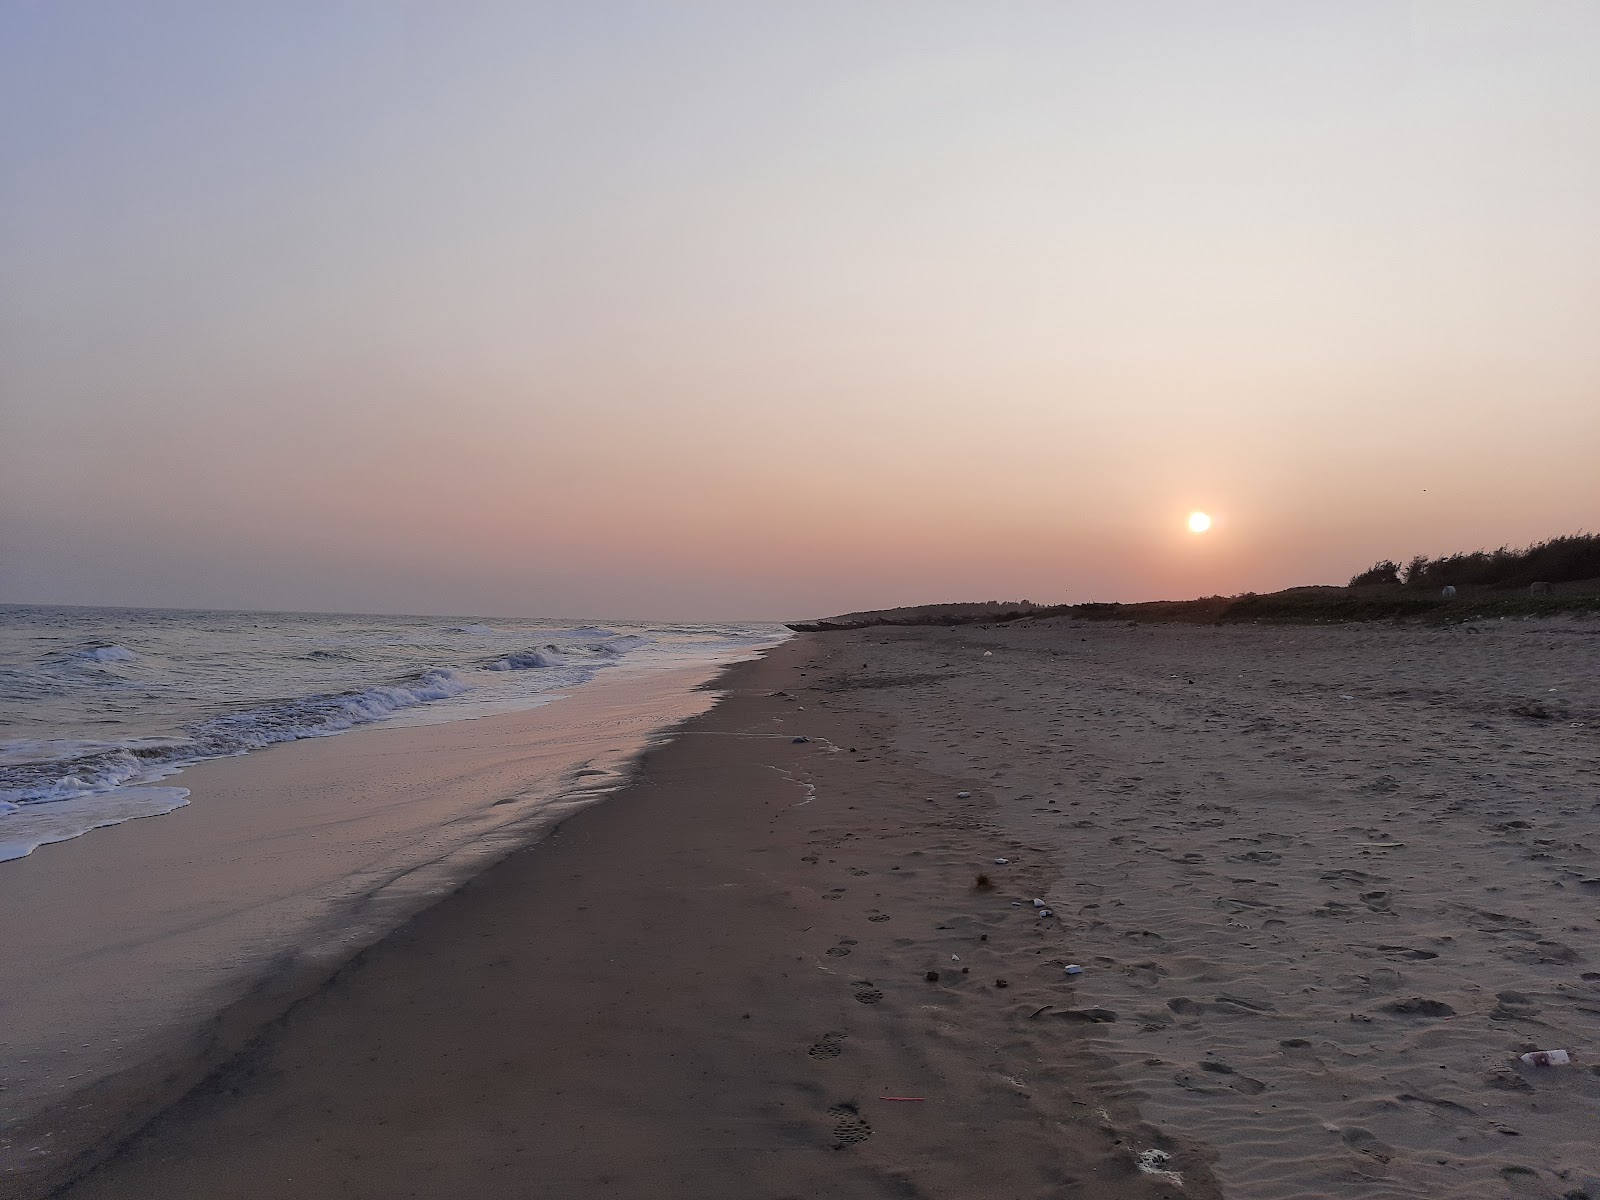 Dhabaleshwar Beach'in fotoğrafı - rahatlamayı sevenler arasında popüler bir yer